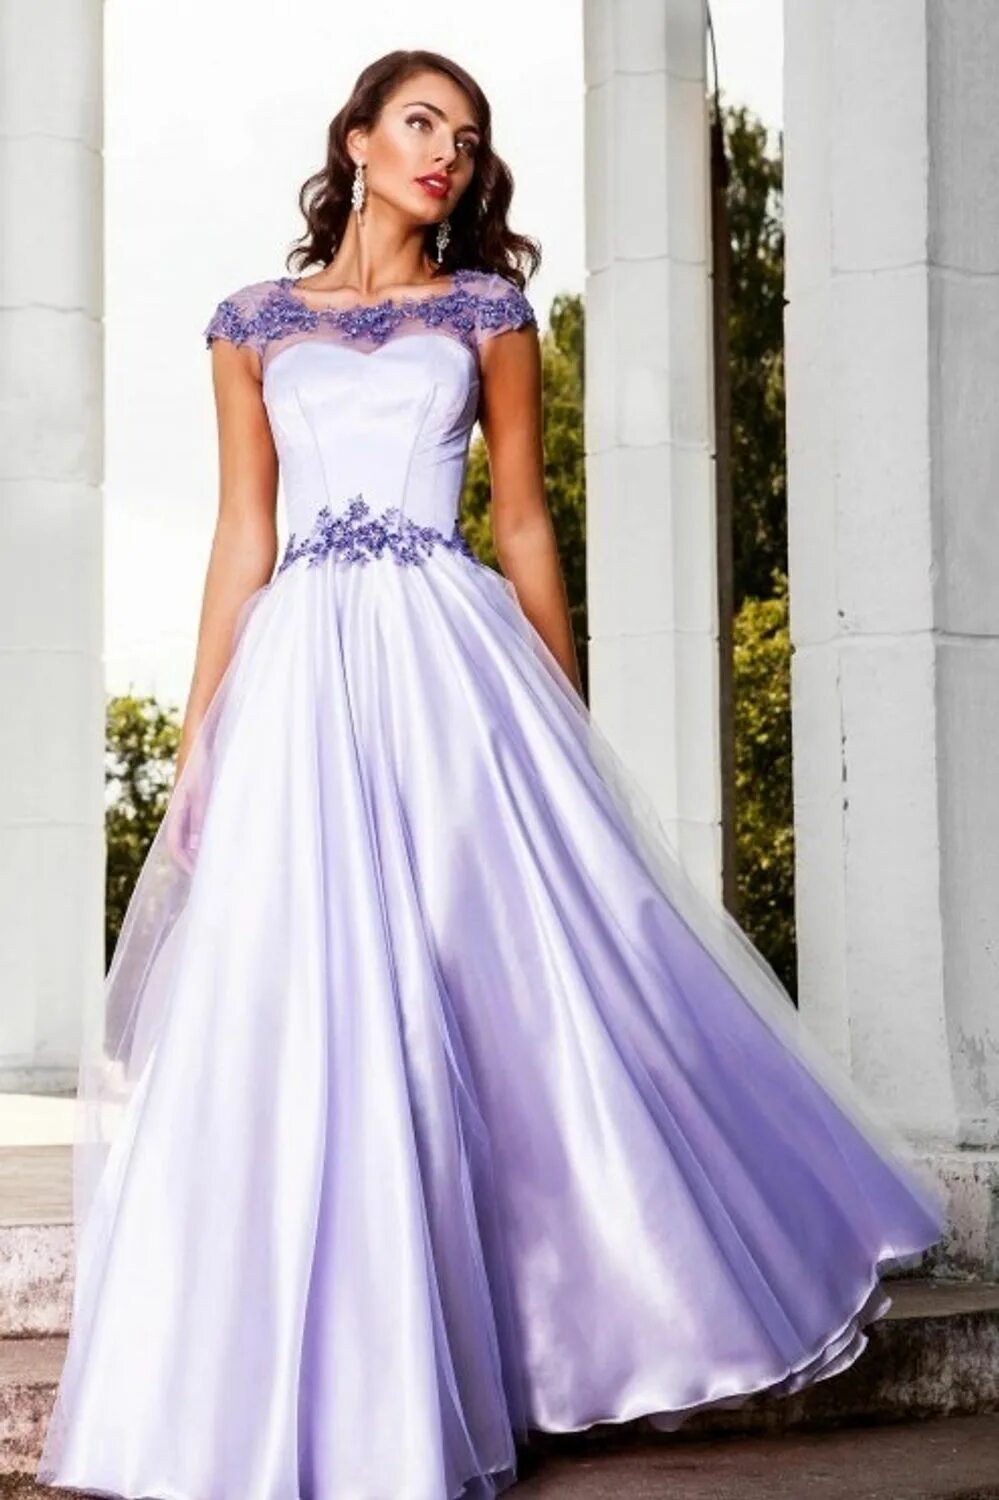 Белое фиолетовое платье. Сиреневое свадебное платье. Фиолетовое свадебное платье. Сиреневое платье на свадьбу. Свадебные платья фиолетового цвета.